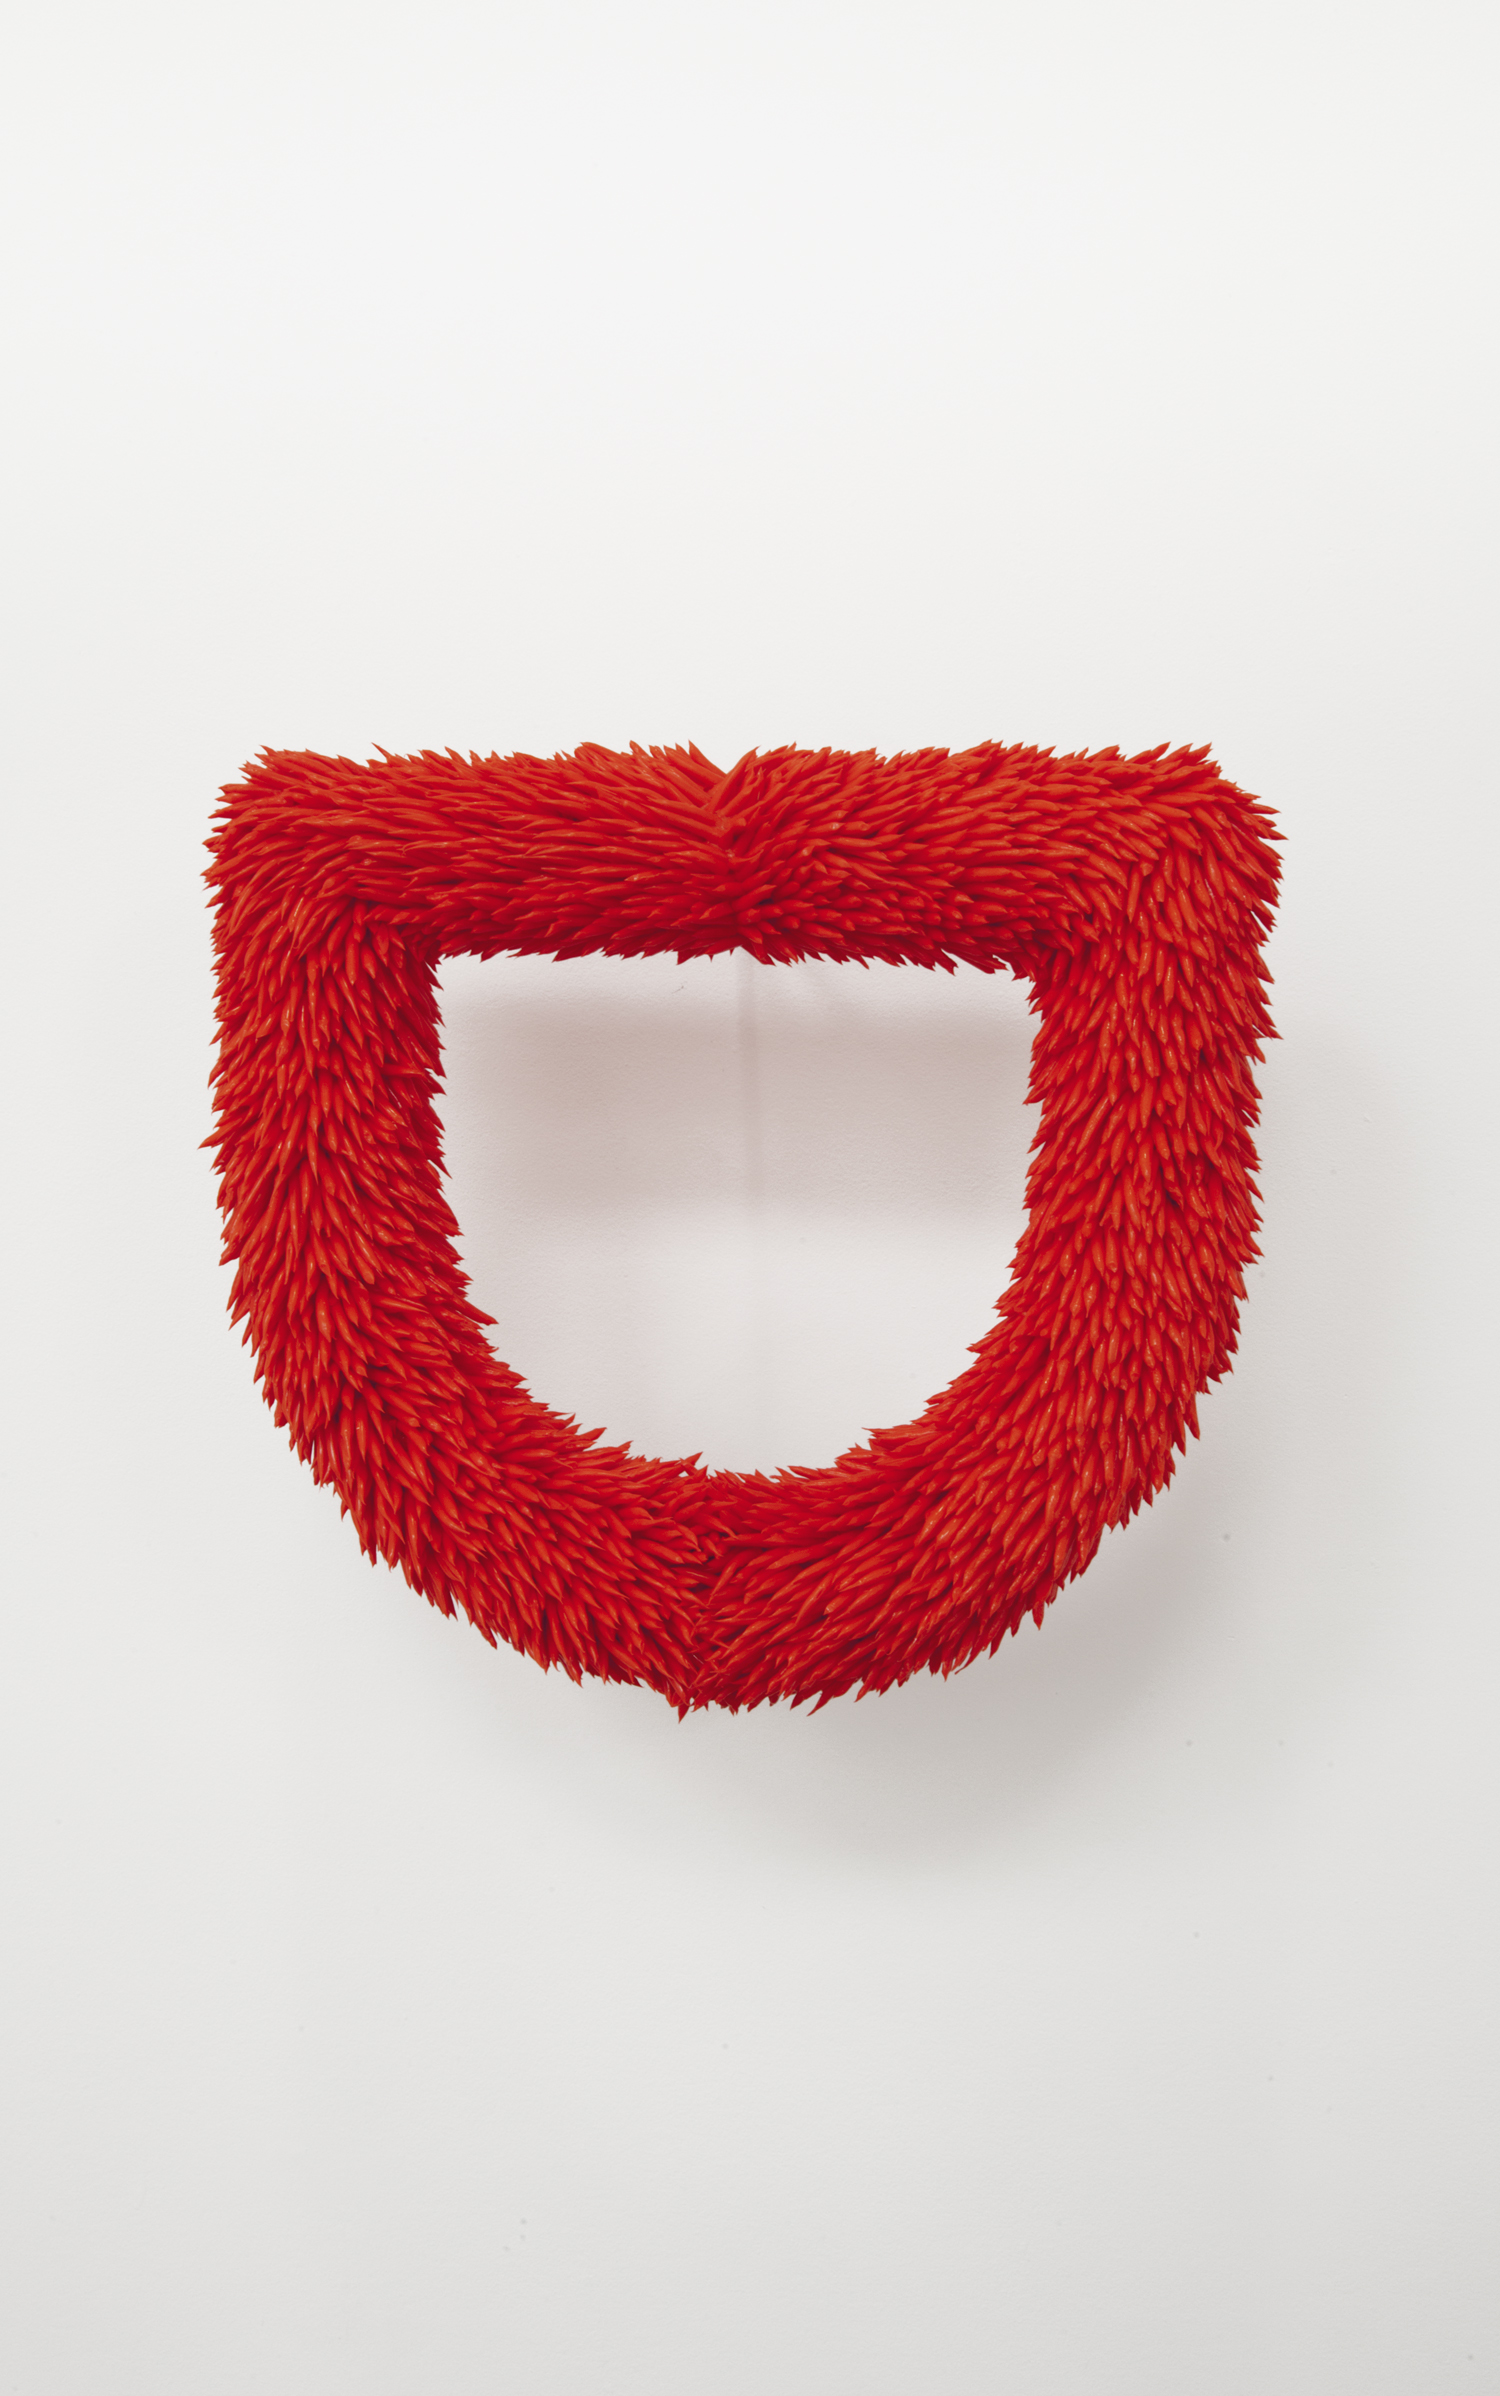   red fur  2018  acrylic, styrofoam, papier maché 12 x 13 x 2.5 inches 